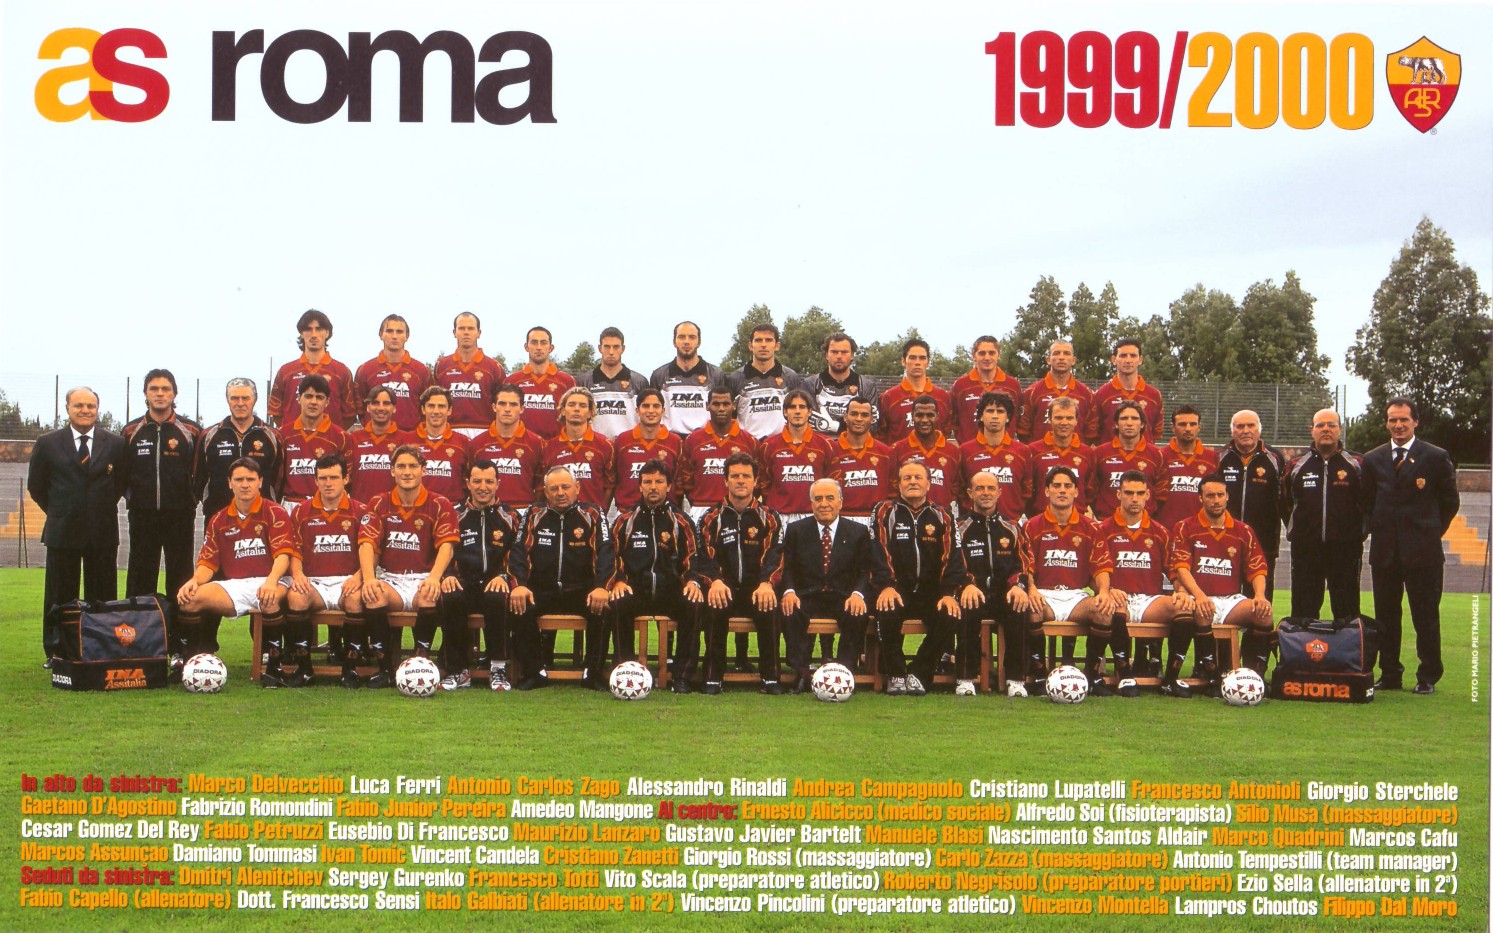 La rosa della Roma 1999-2000